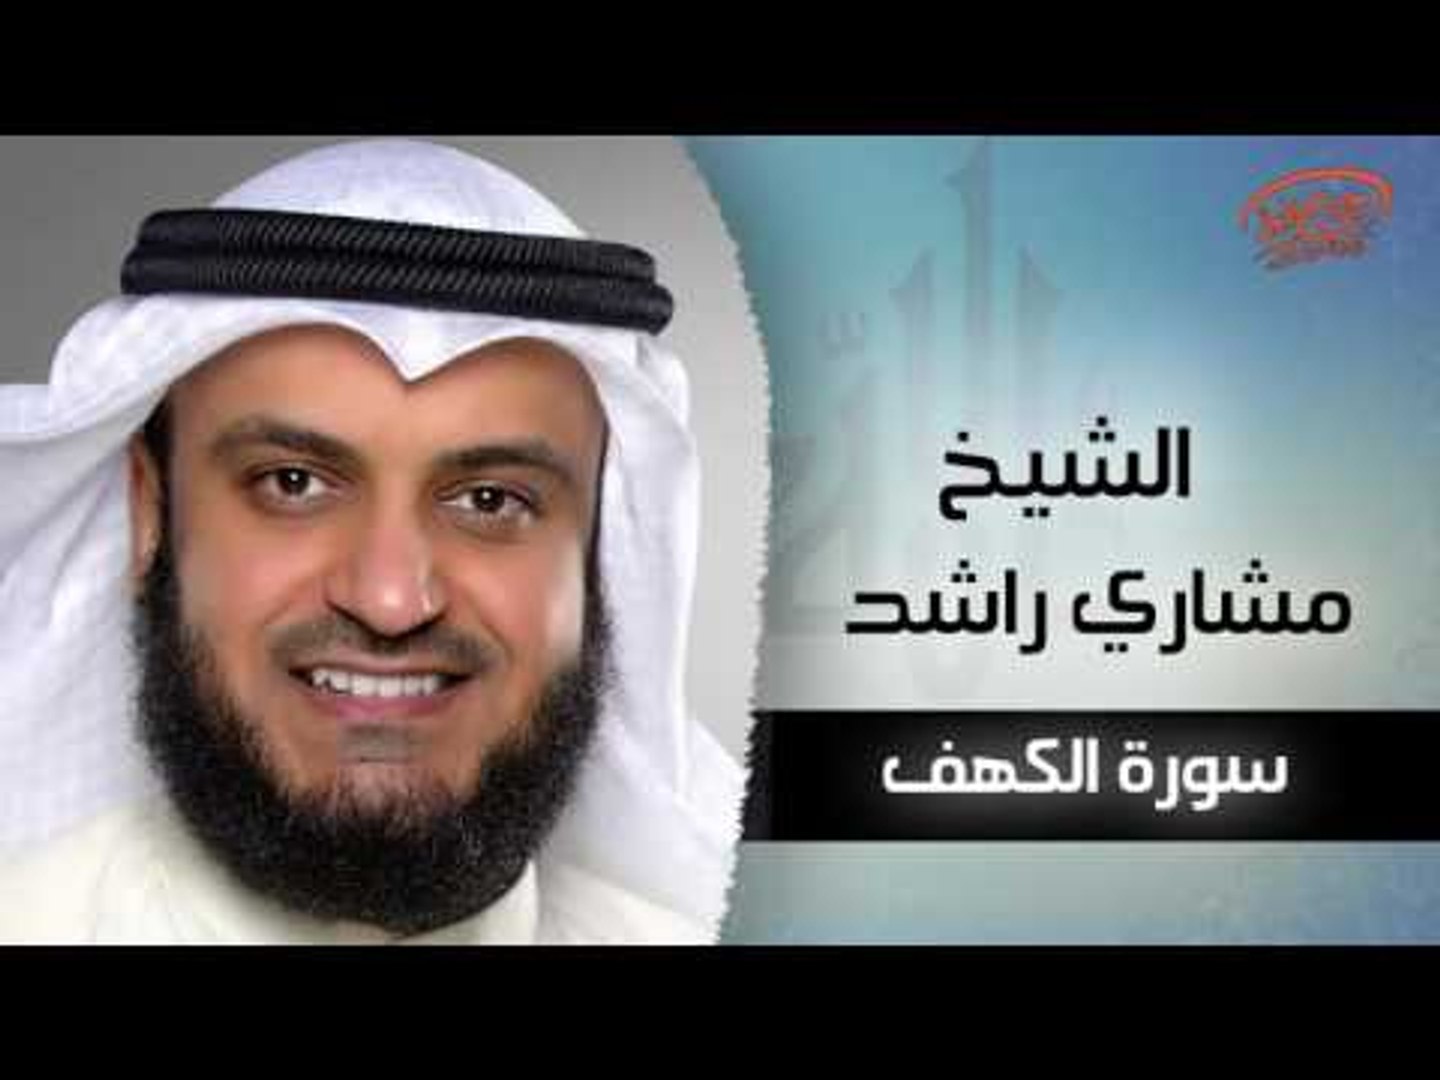 سورة الكهف بصوت القارئ الشيخ مشارى بن راشد العفاسى Video Dailymotion